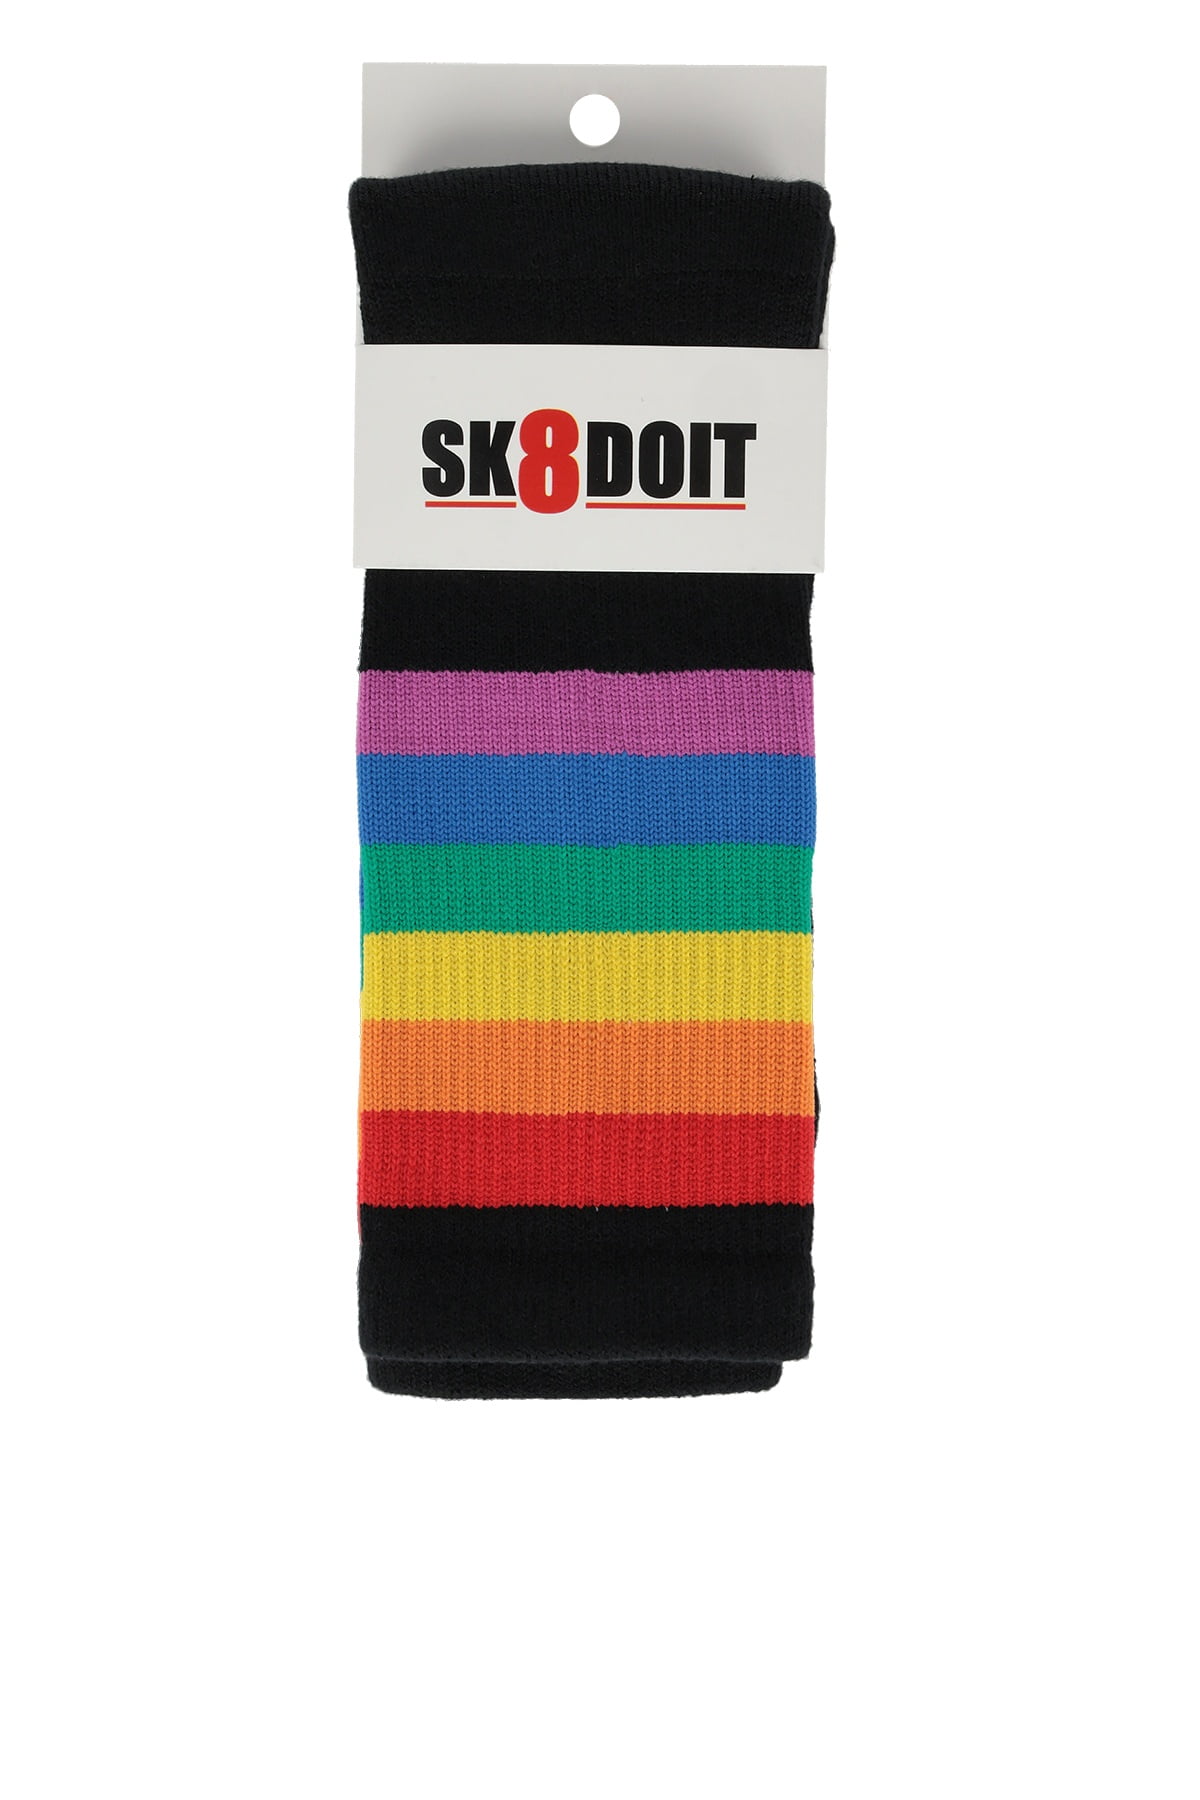 Sk8doit CañaMedia Negro Arcoiris 1 SK8DOIT, la marca que arrasa entre los calcetines más modernos